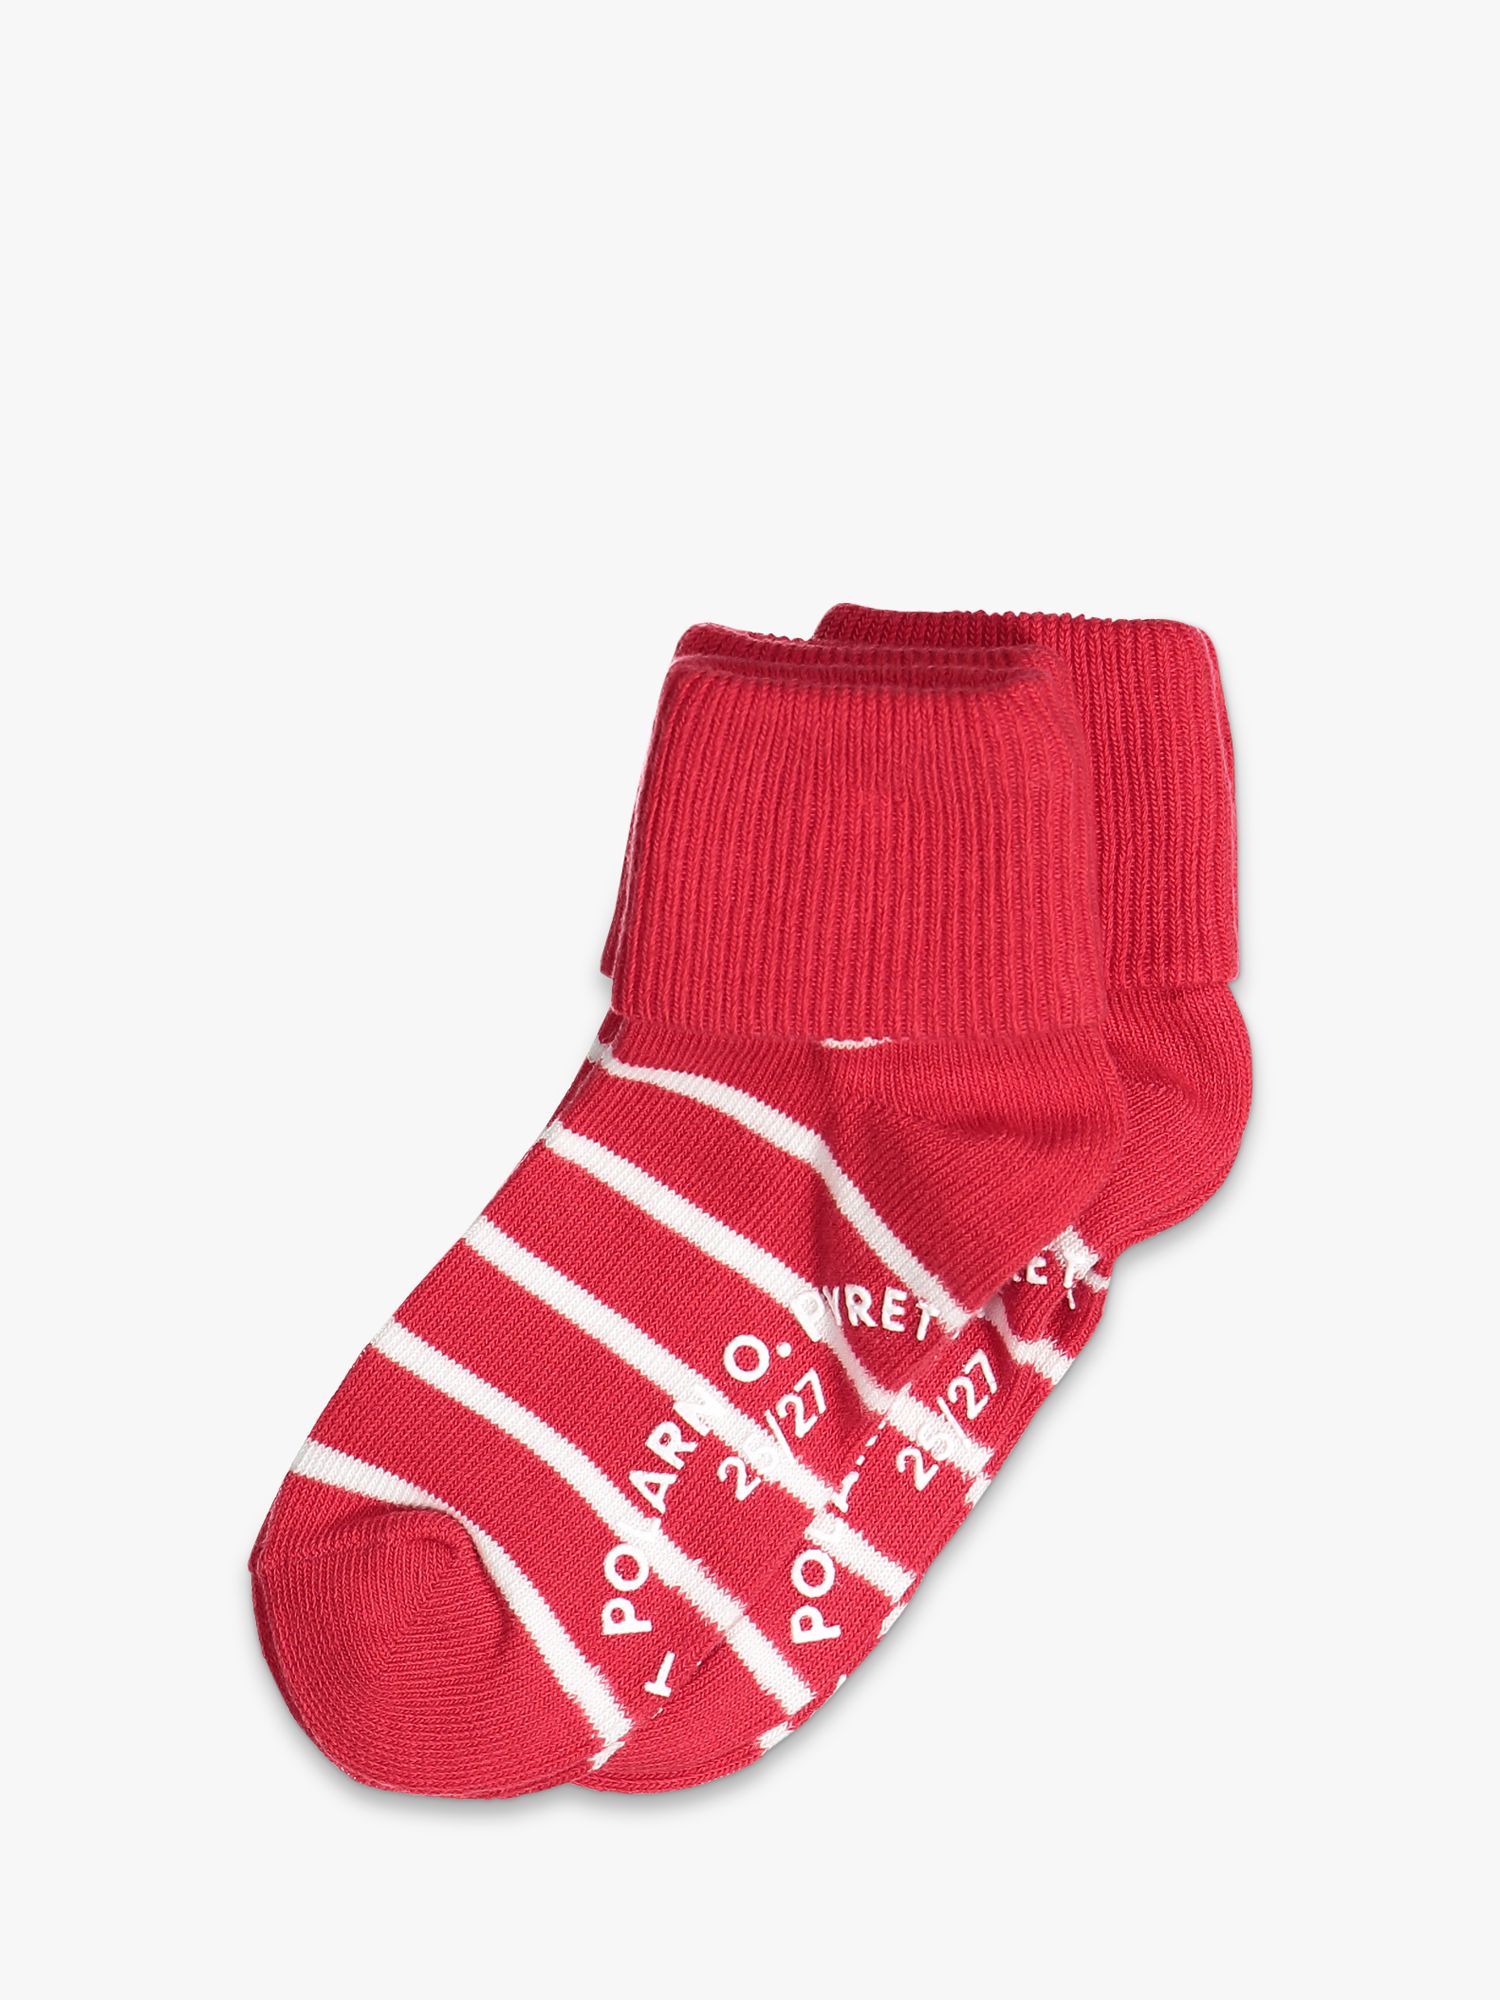 Детские противоскользящие носки в полоску Polarn O. Pyret, красный детские противоскользящие носки